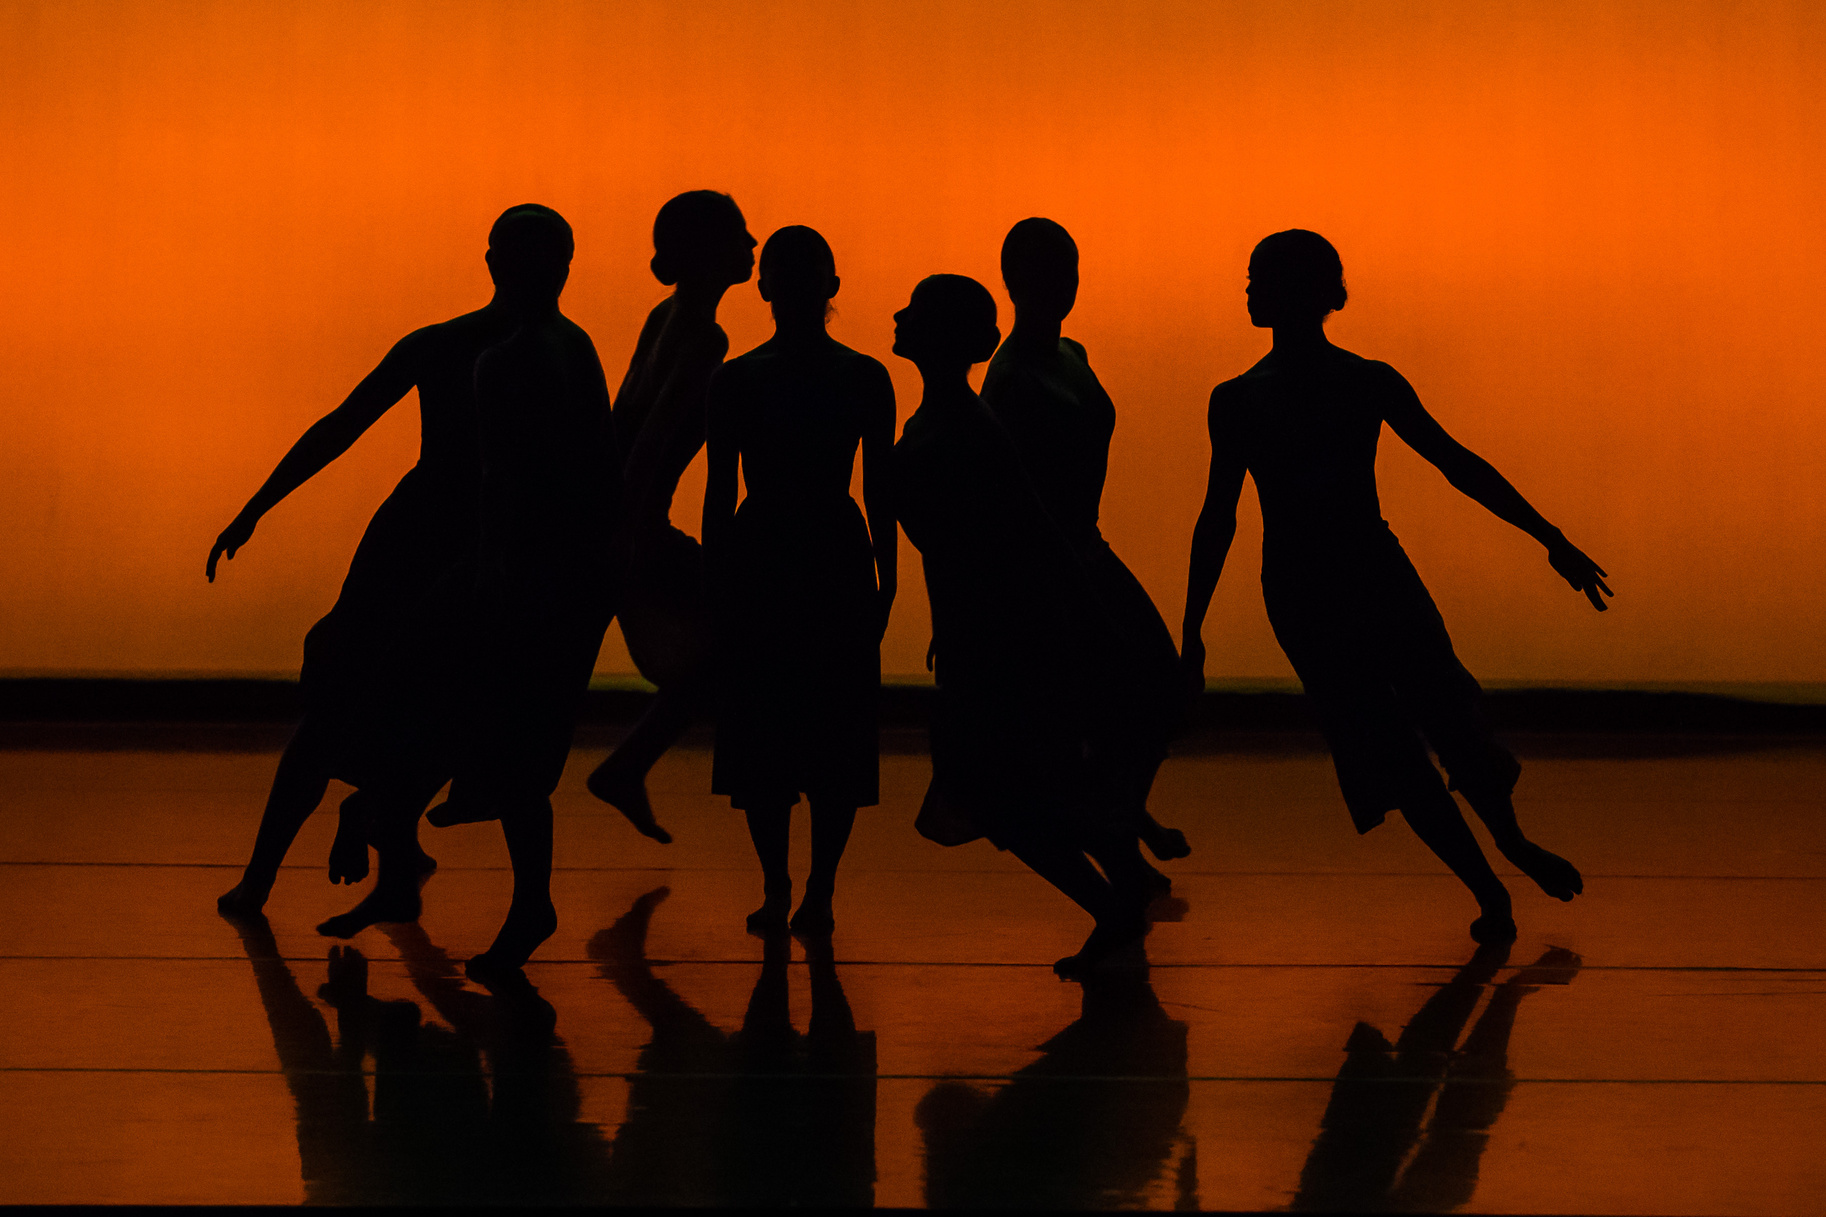 Silhouette of People Dancing on Brown Wooden Floor